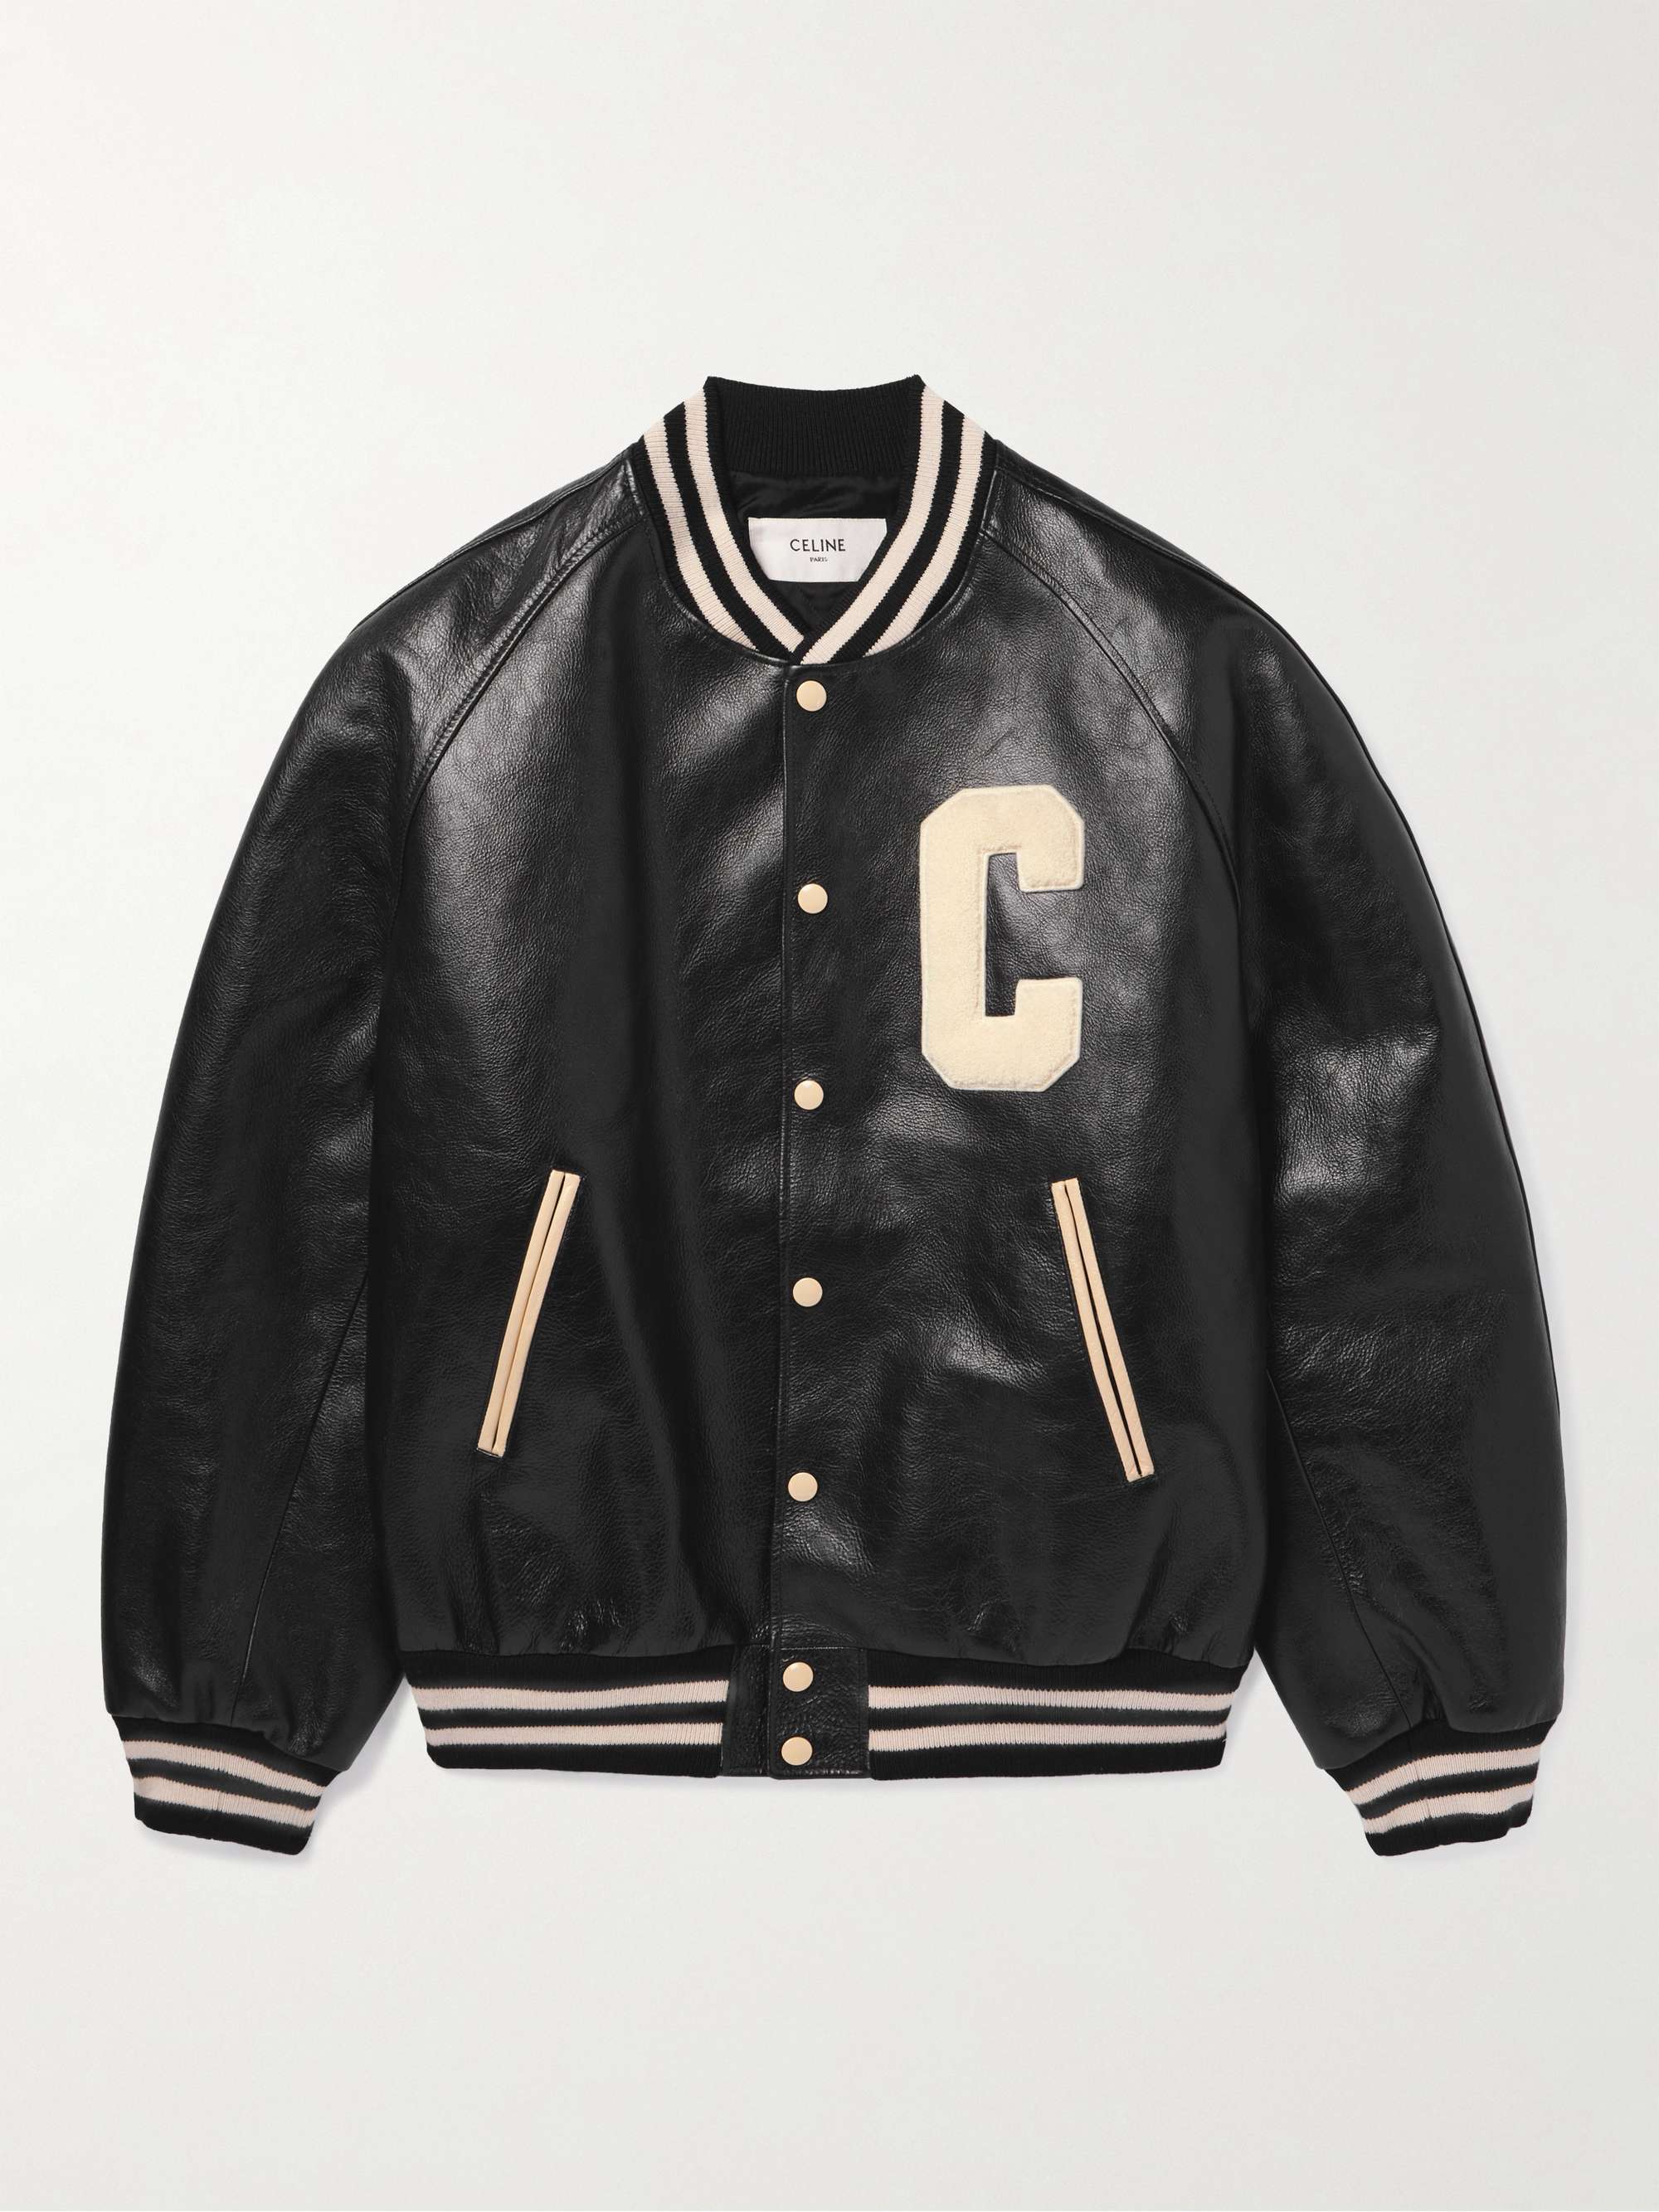 Celine Homme Teddy Logo-Appliquéd Leather Bomber Jacket - Men - Black Coats and Jackets - L